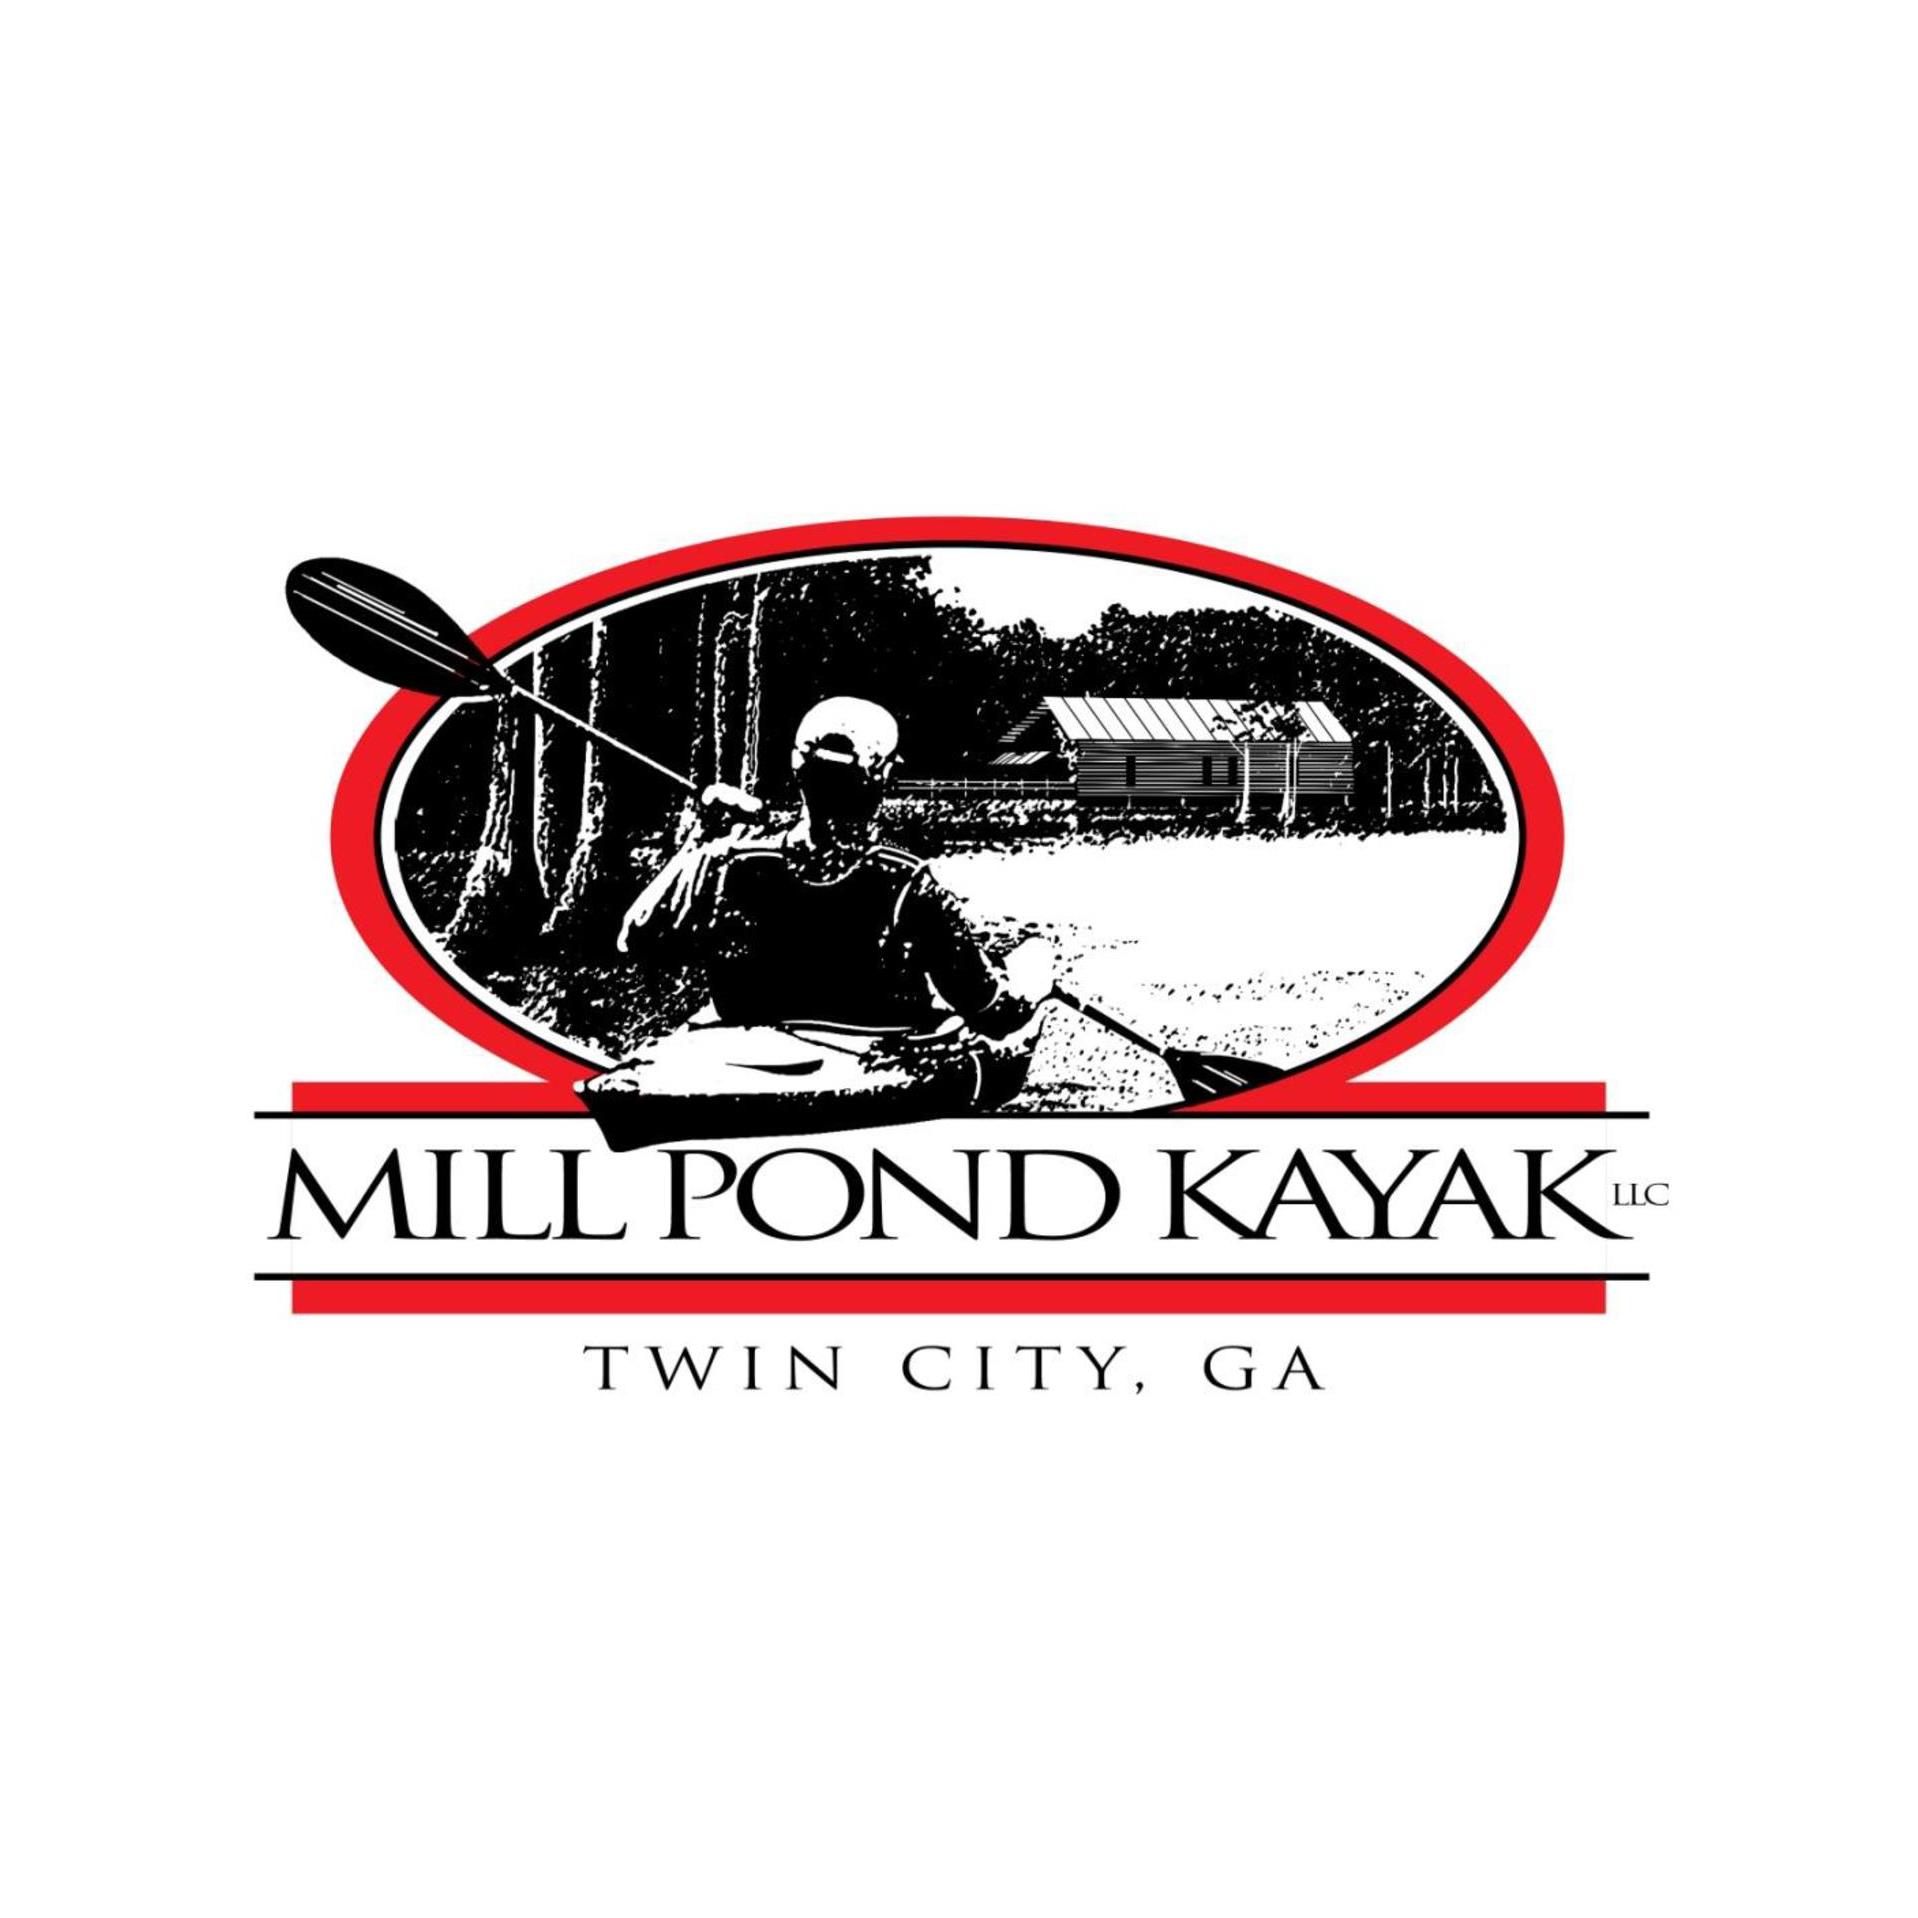 Mill Pond Kayak